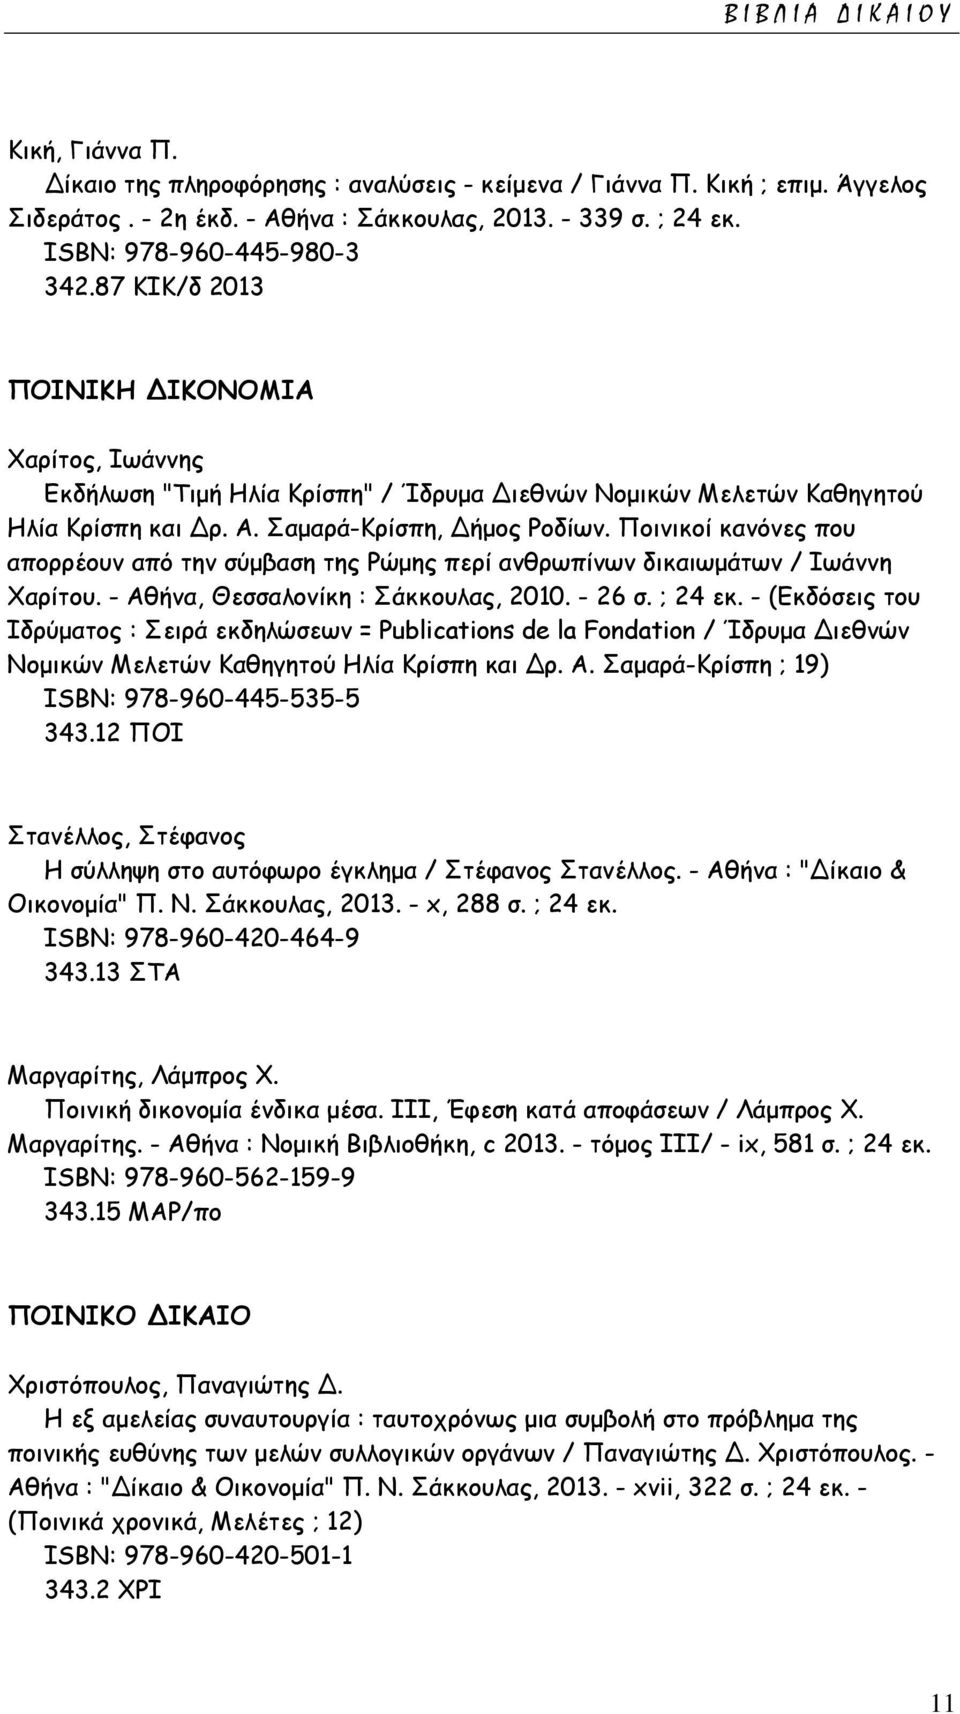 Ποινικοί κανόνες που απορρέουν από την σύμβαση της Ρώμης περί ανθρωπίνων δικαιωμάτων / Ιωάννη Χαρίτου. - Αθήνα, Θεσσαλονίκη : Σάκκουλας, 2010. - 26 σ. ; 24 εκ.